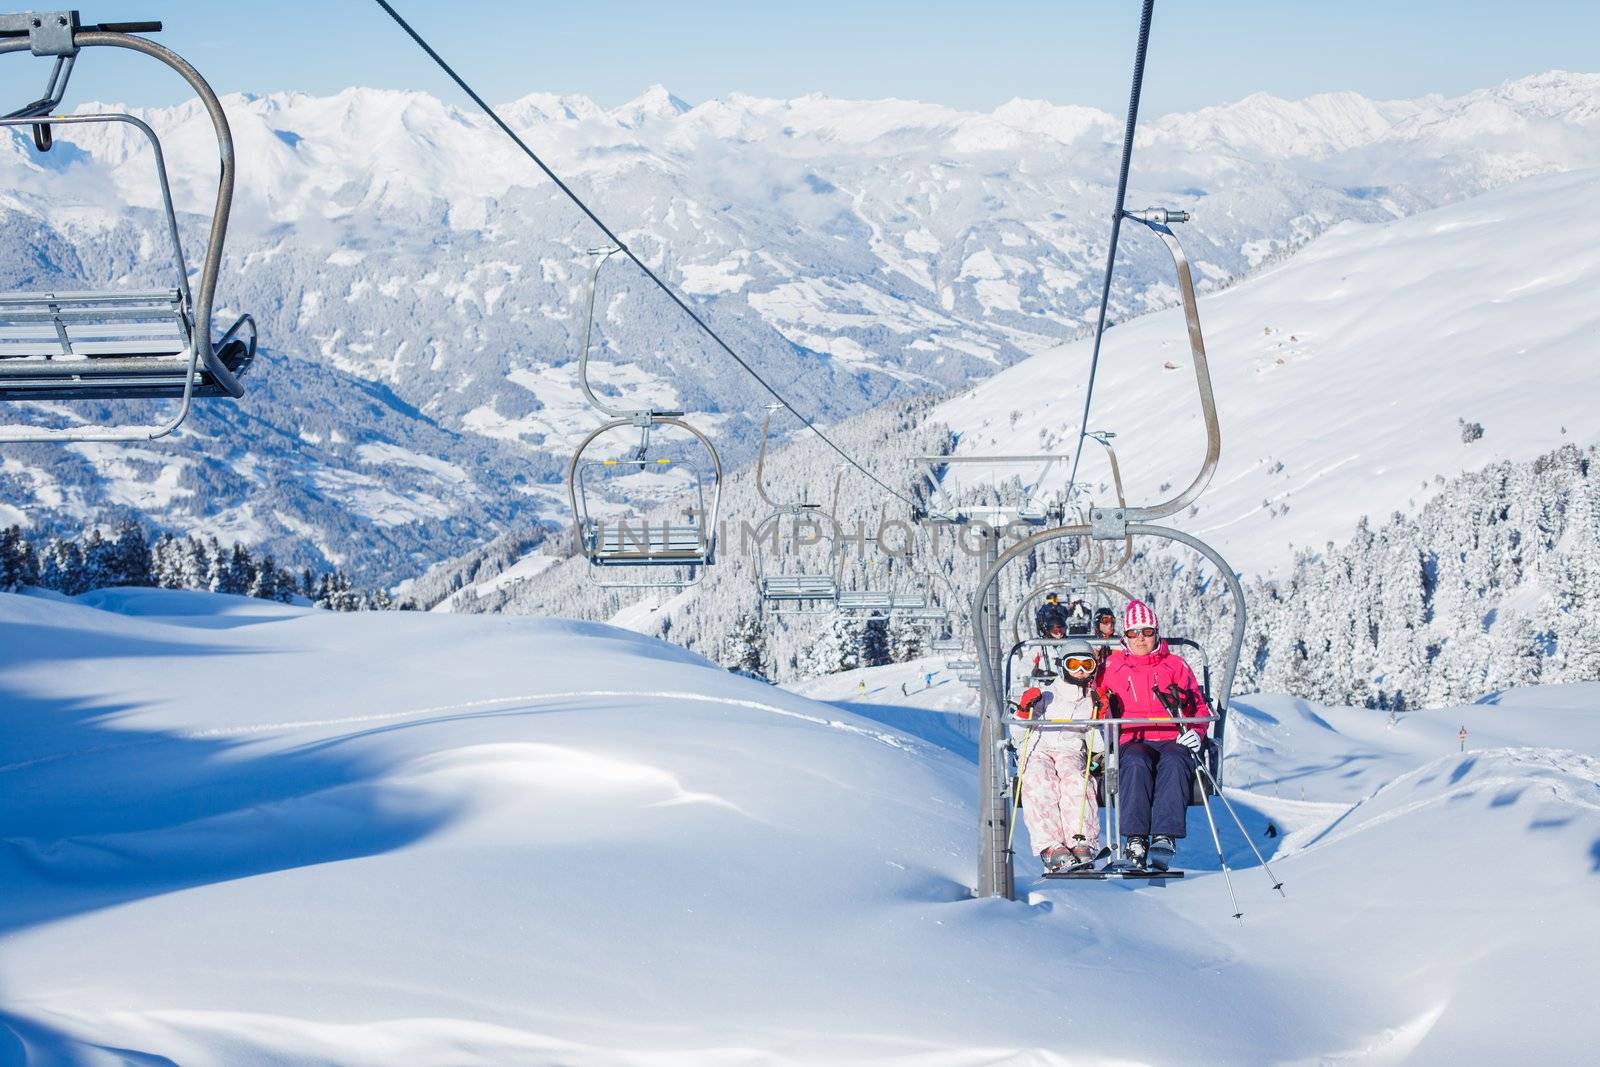 The Alpine skiing resort in Austria Zillertal